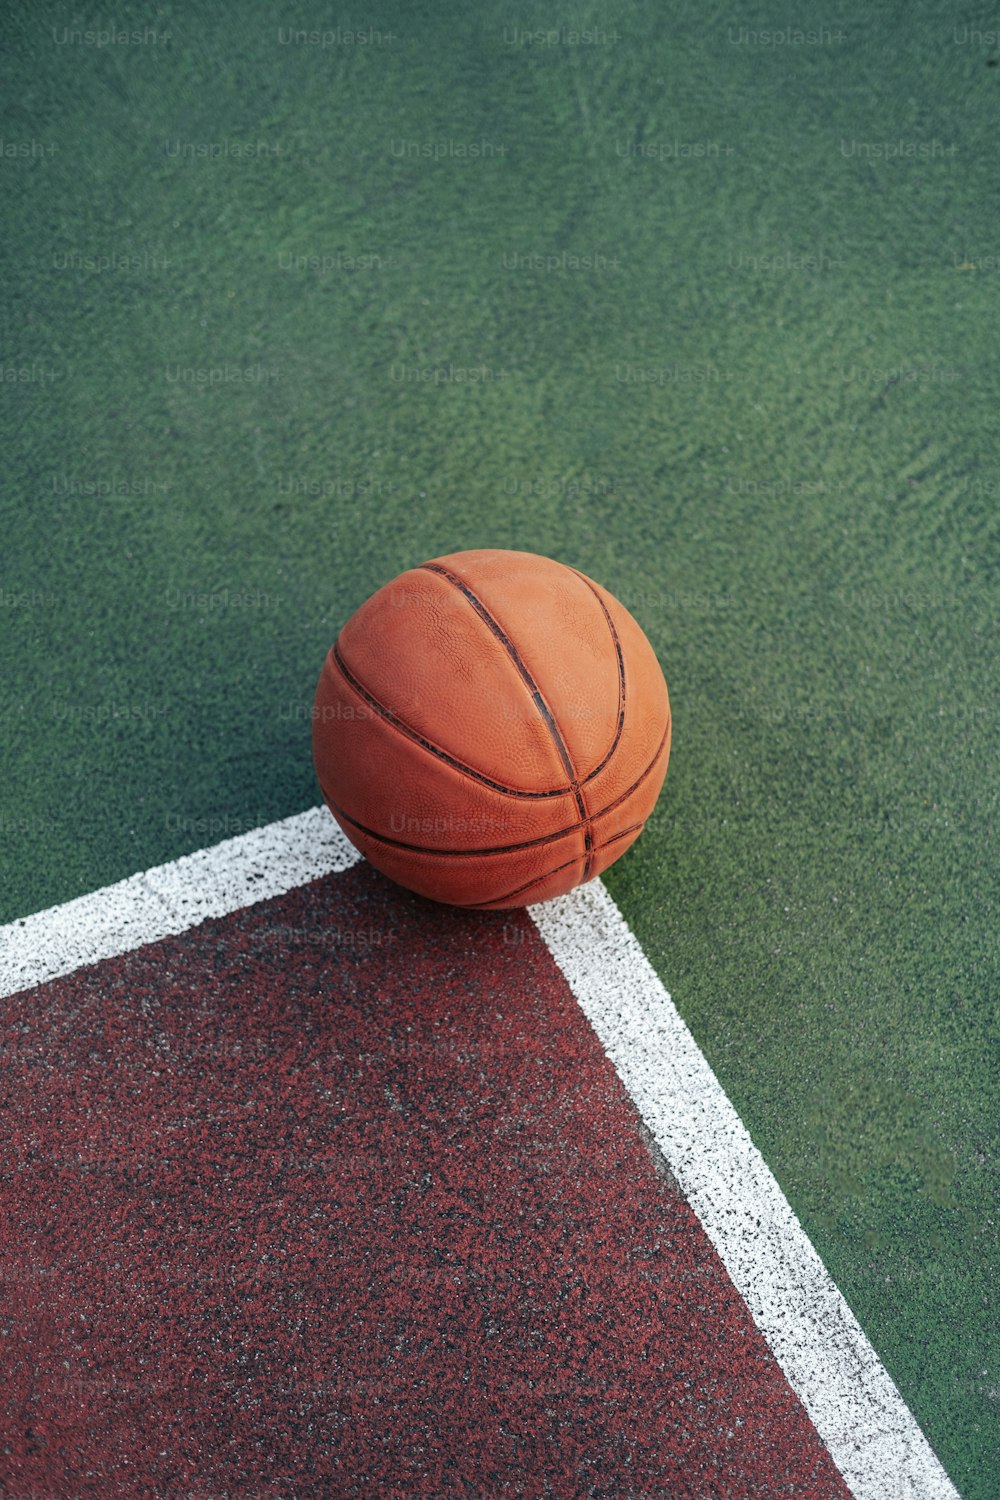 Un pallone da basket seduto in cima a un campo verde